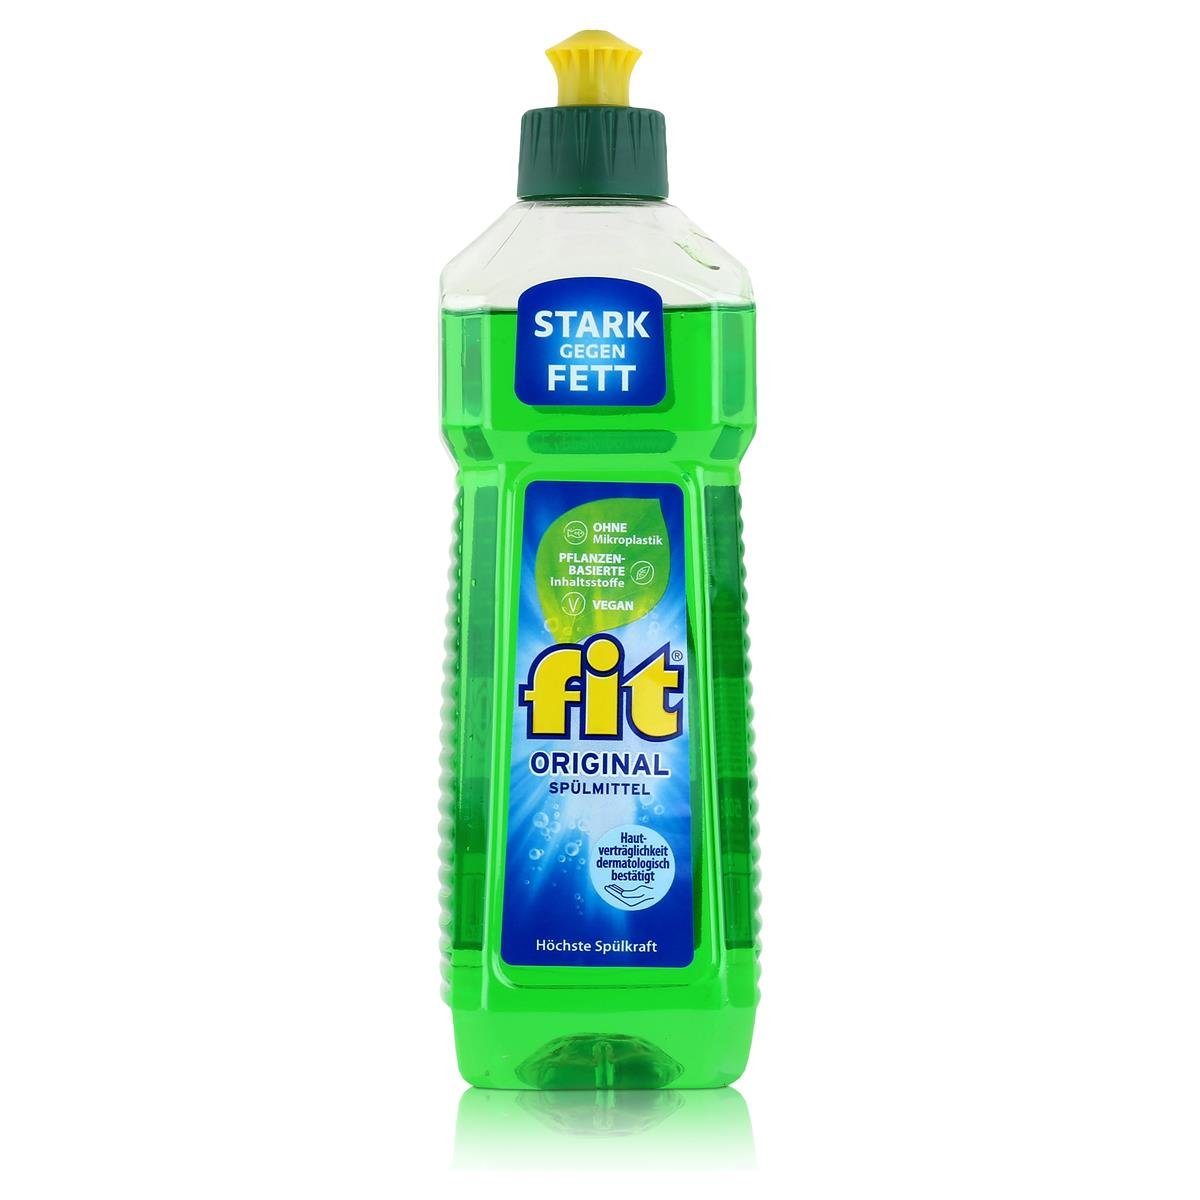 FIT fit Original Spülmittel 500ml - Stark gegen Fett (1er Pack) Geschirrspülmittel